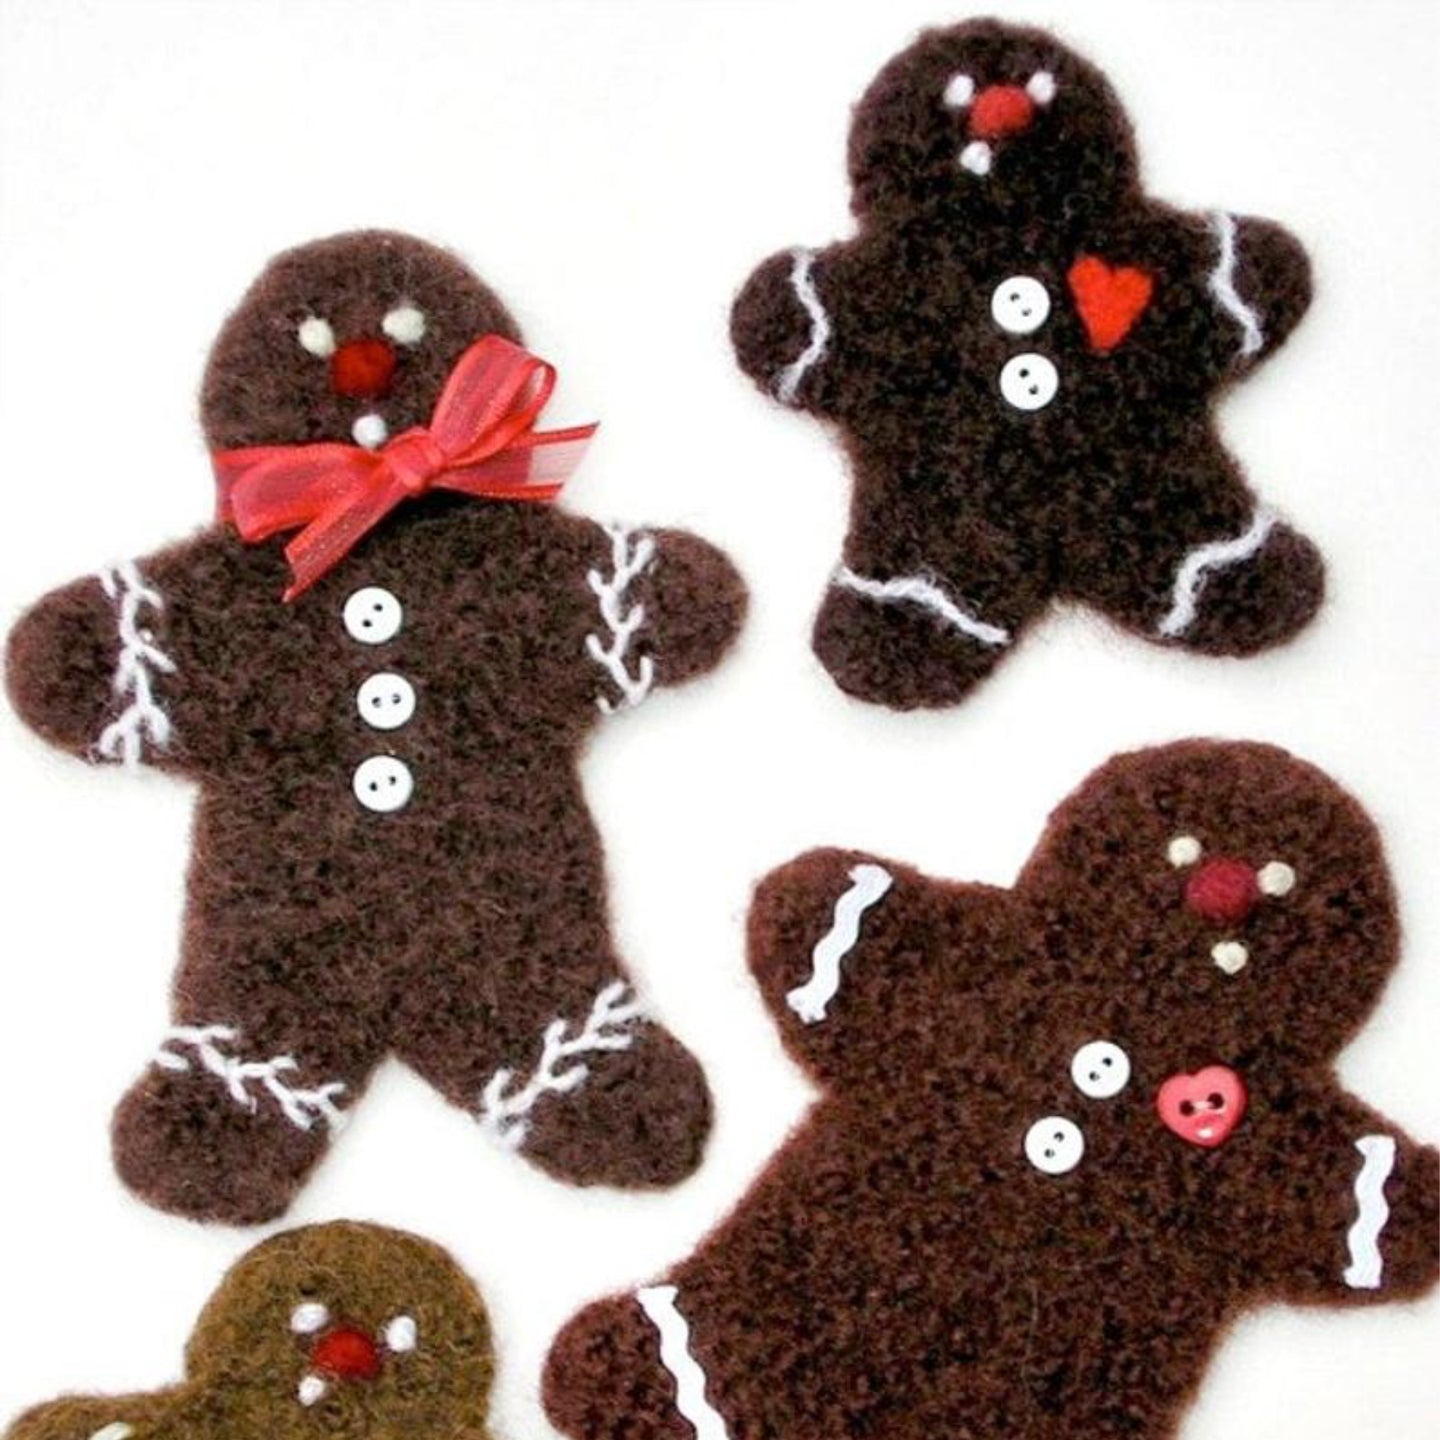 marie mayhew's woolly gingerbread cookie pattern